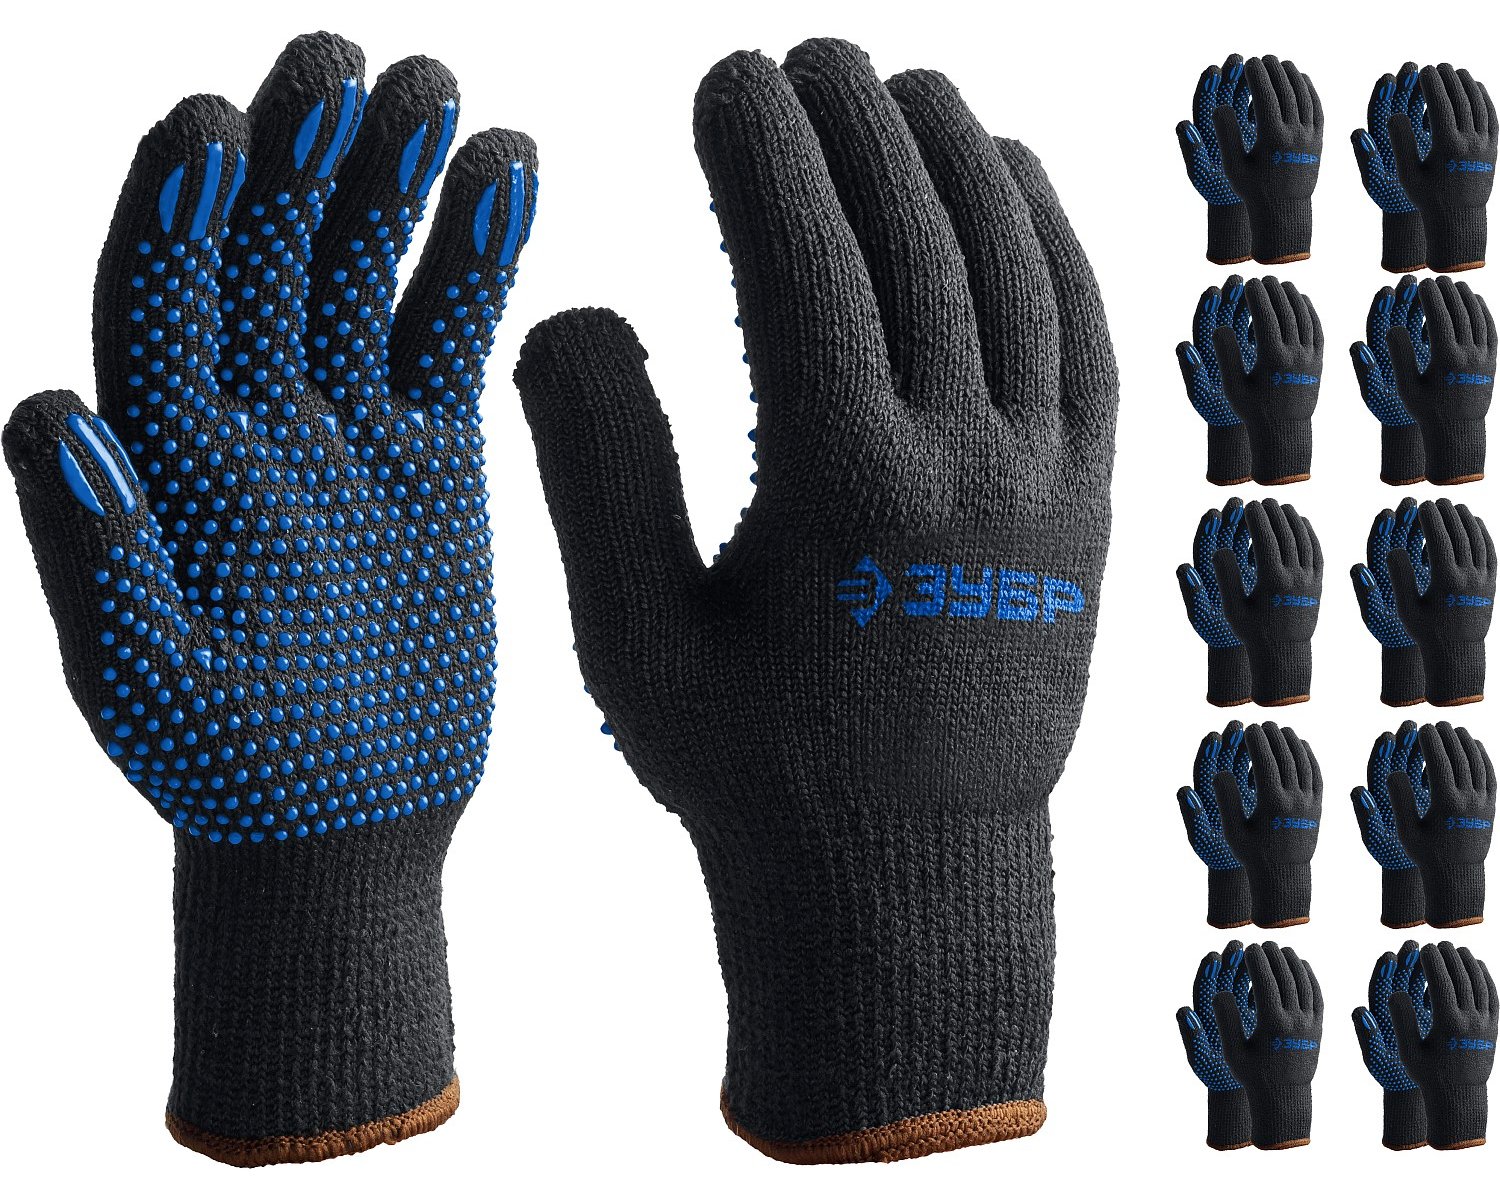 Трикотажные перчатки ЗУБР р. L-XL утепленные с ПВХ покрытием (точка) 10 пар (11462-H10)Купить